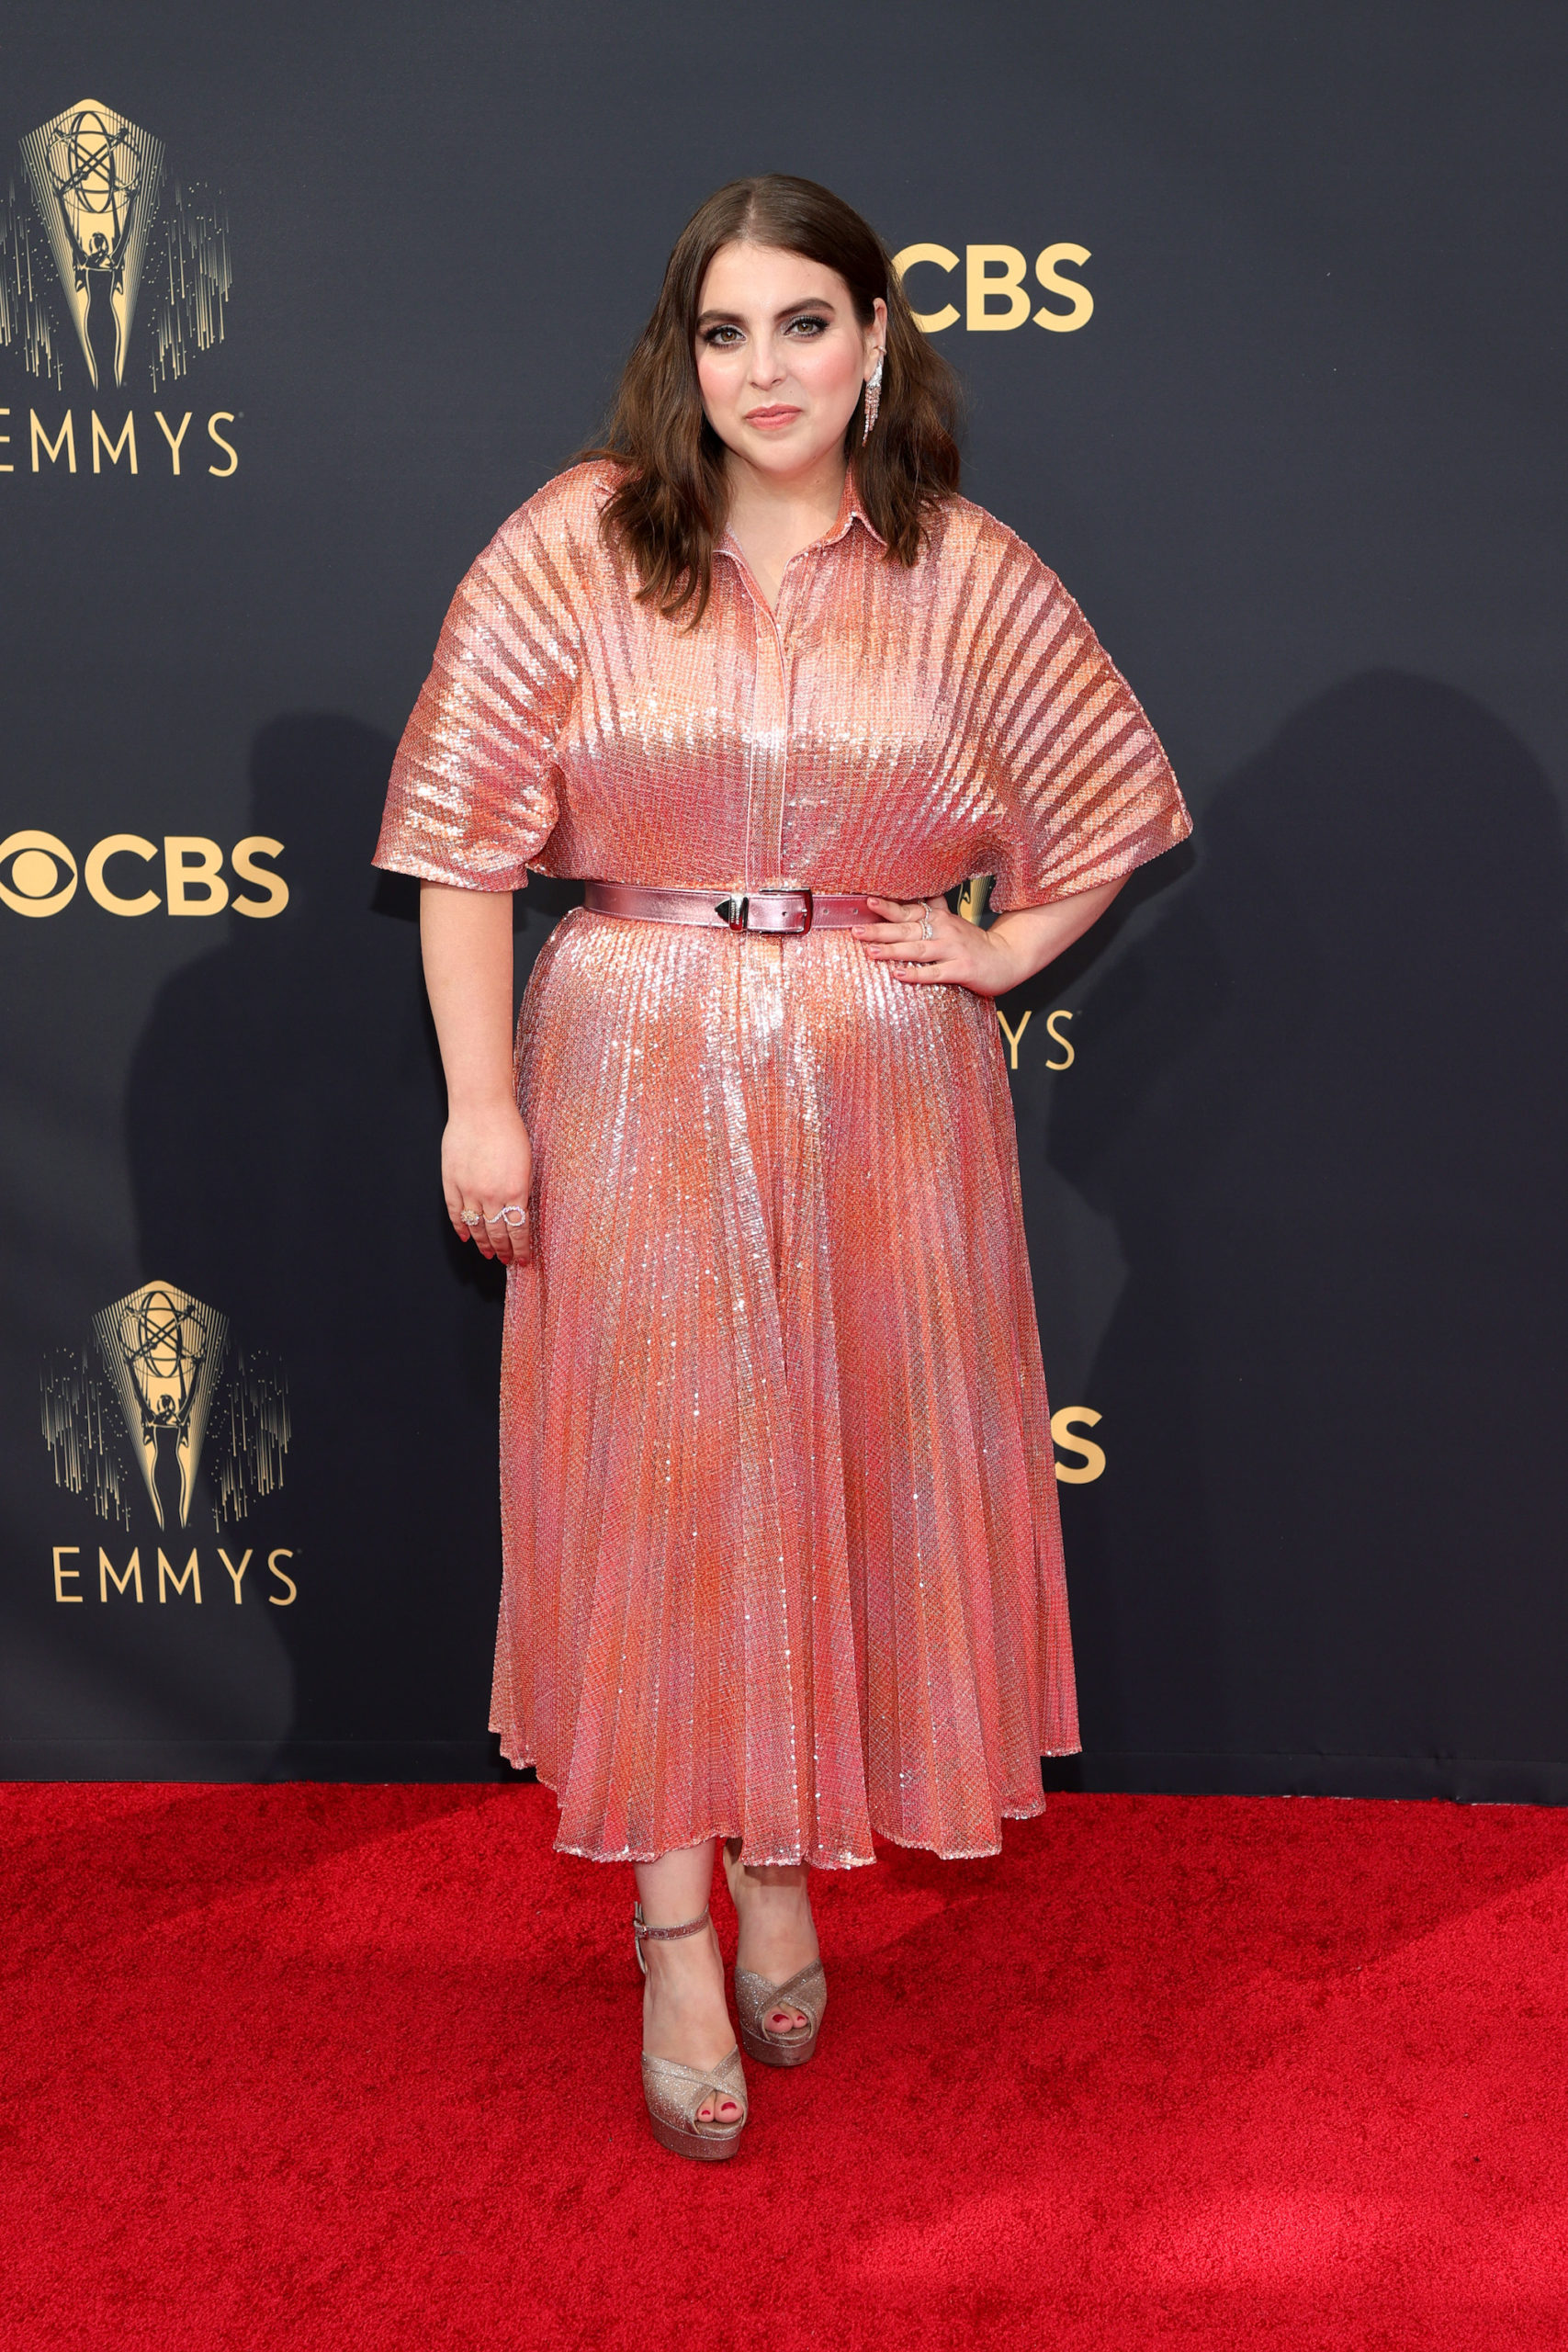 Beanie Feldstein at the 2021 Emmys